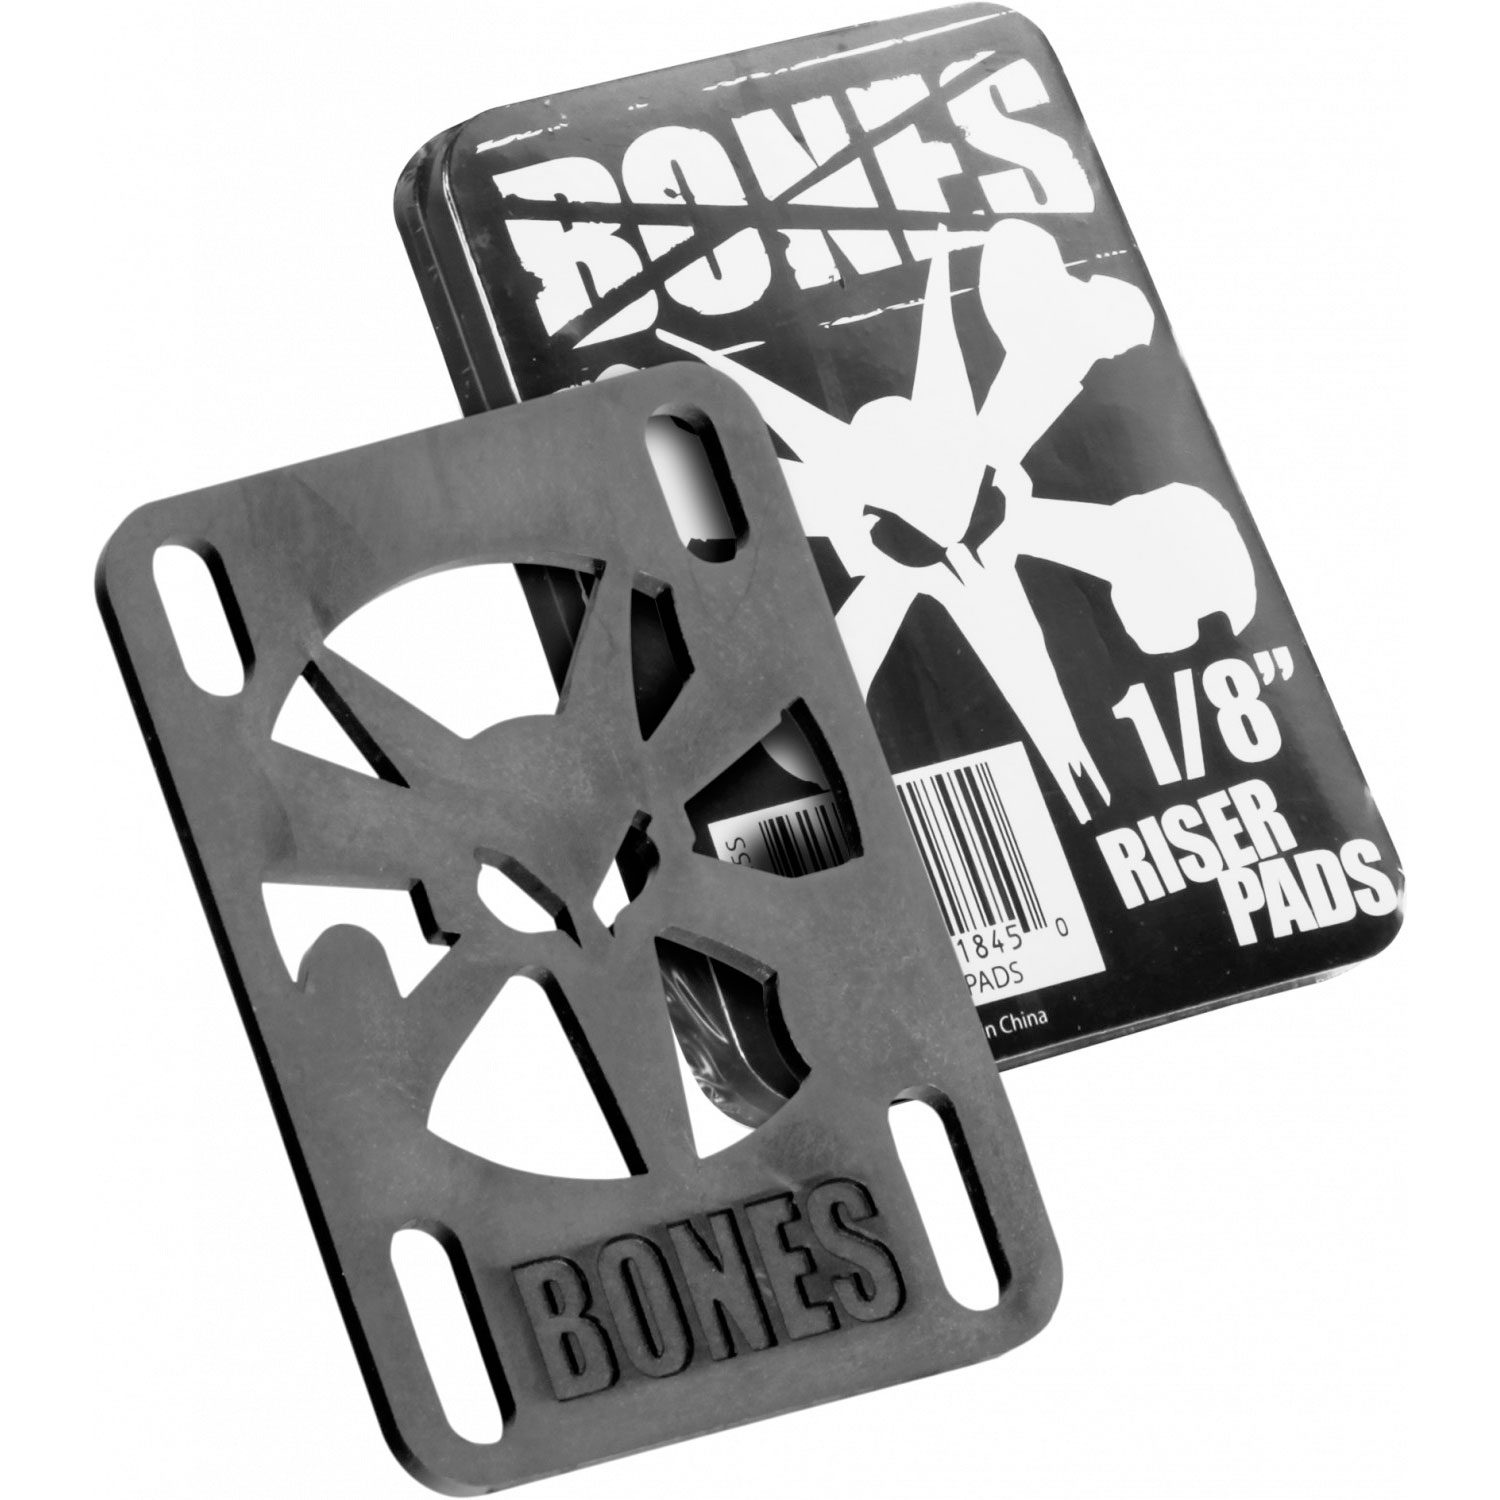 Bones Riser Pads 1/8" 